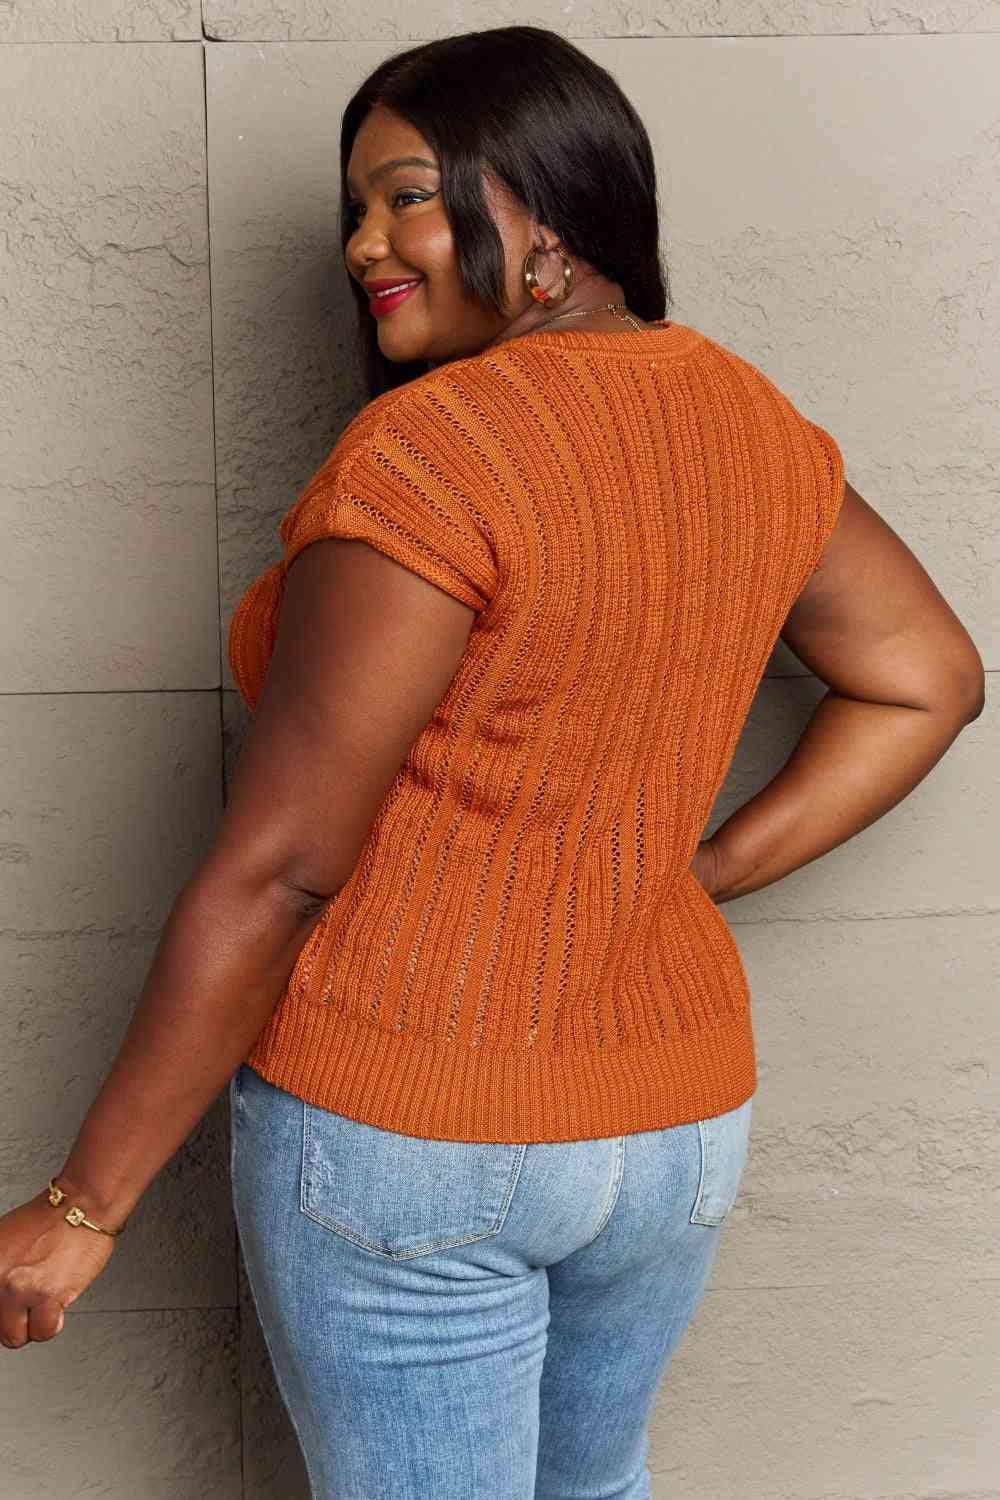 Bona Fide Fashion - Full Size Preppy Casual Knit Sweater Vest - Women Fashion - Bona Fide Fashion